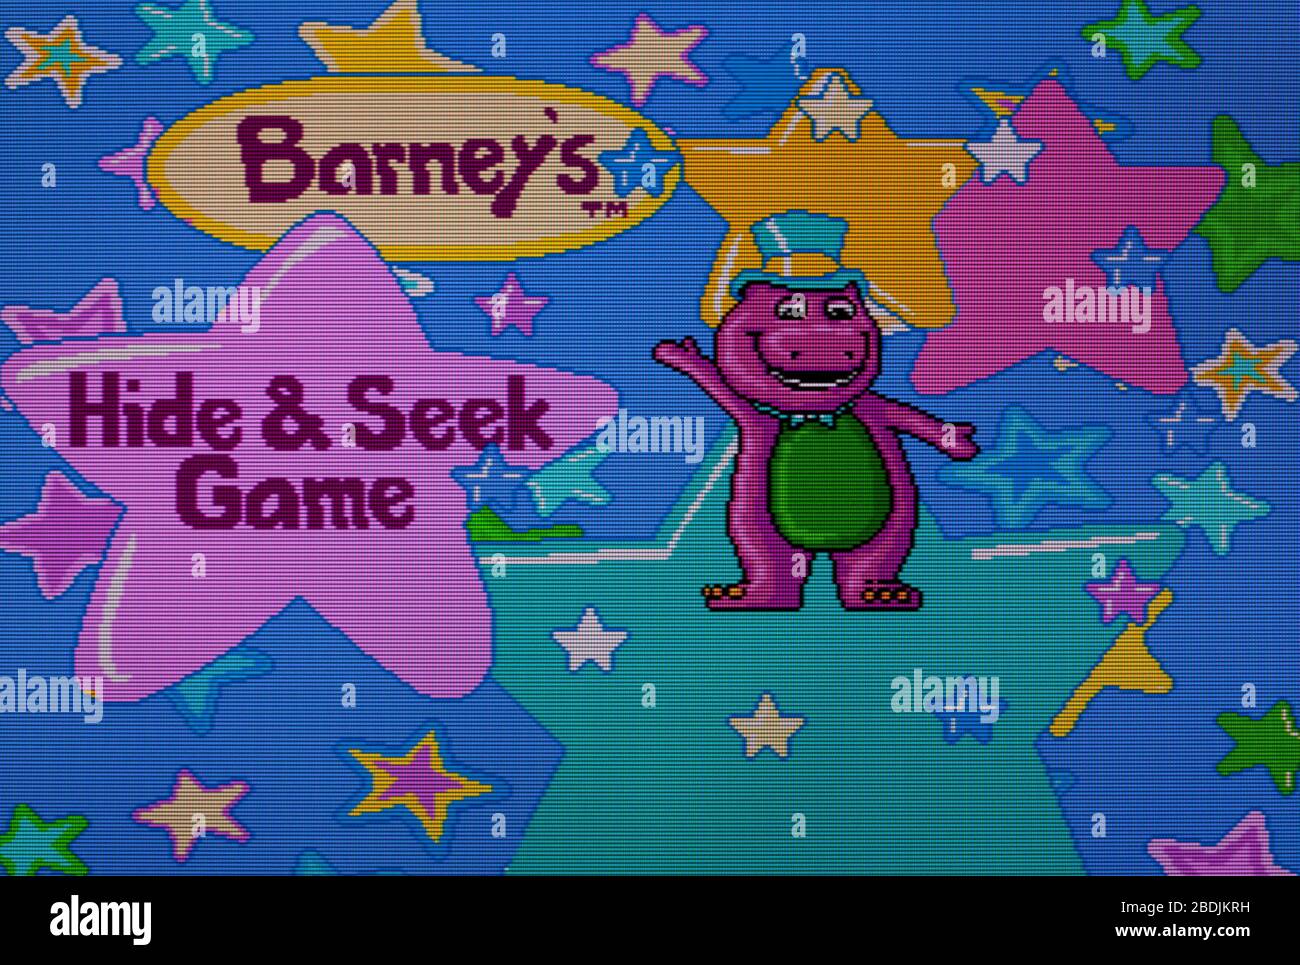 Barney's Hide & Seek Game - Sega Genesis Mega Drive - Editorial